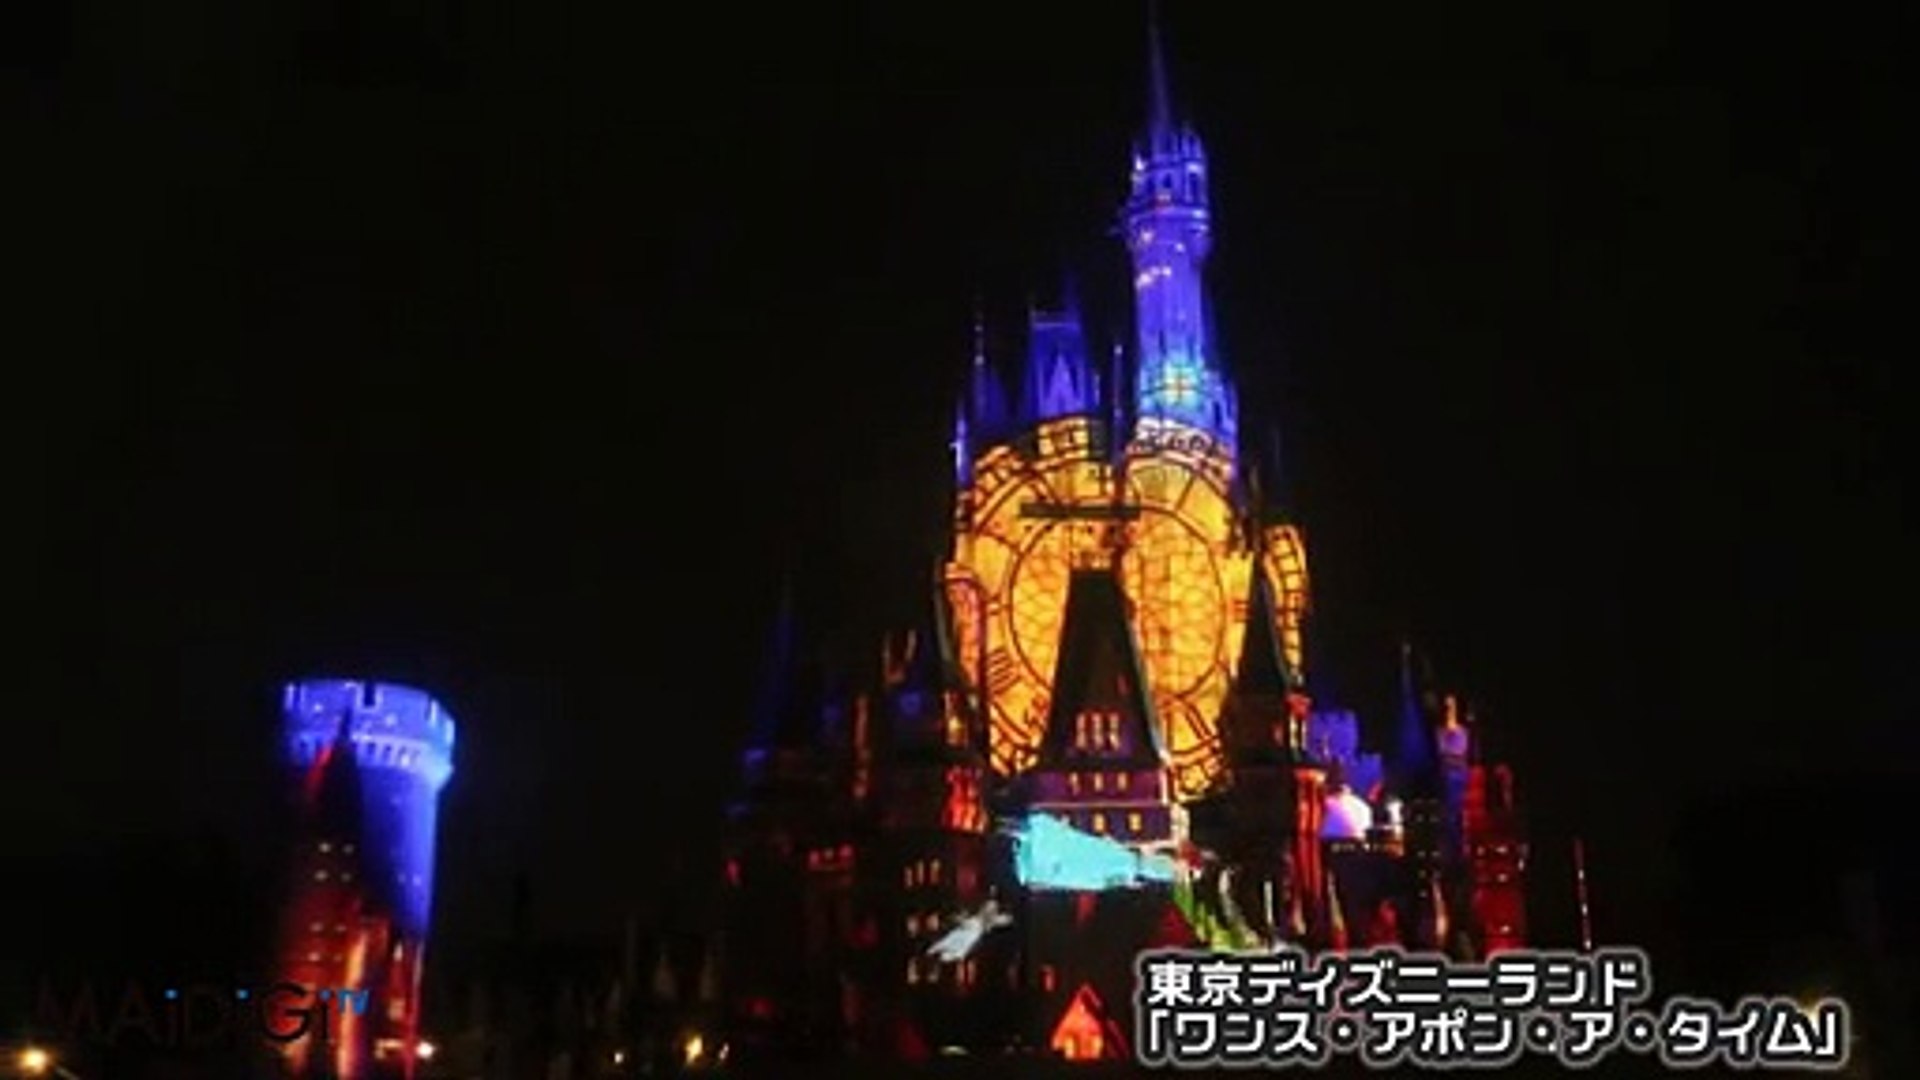 アナ雪も シンデレラ城にプロジェクションマッピング Tdl ワンス アポン ア タイム Once Upon A Time Tokyo Disneyland Dailymotion Video